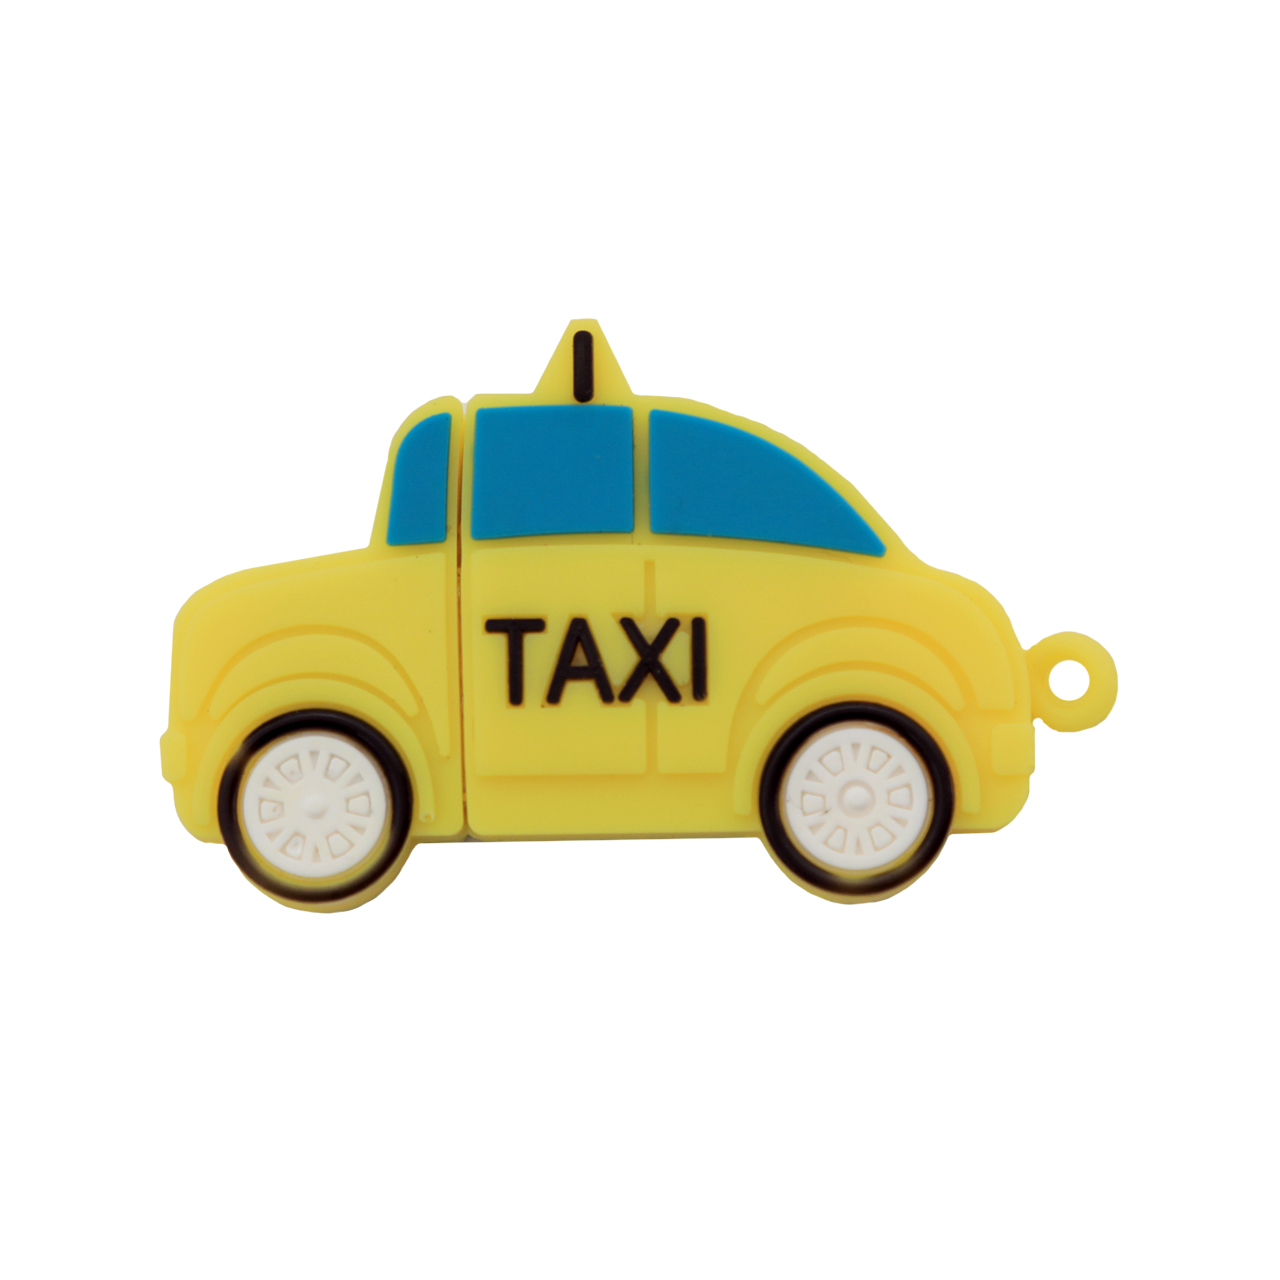 فلش مموری دایا دیتا طرح Taxi مدل PM1003-USB3 ظرفیت 128 گیگابایت